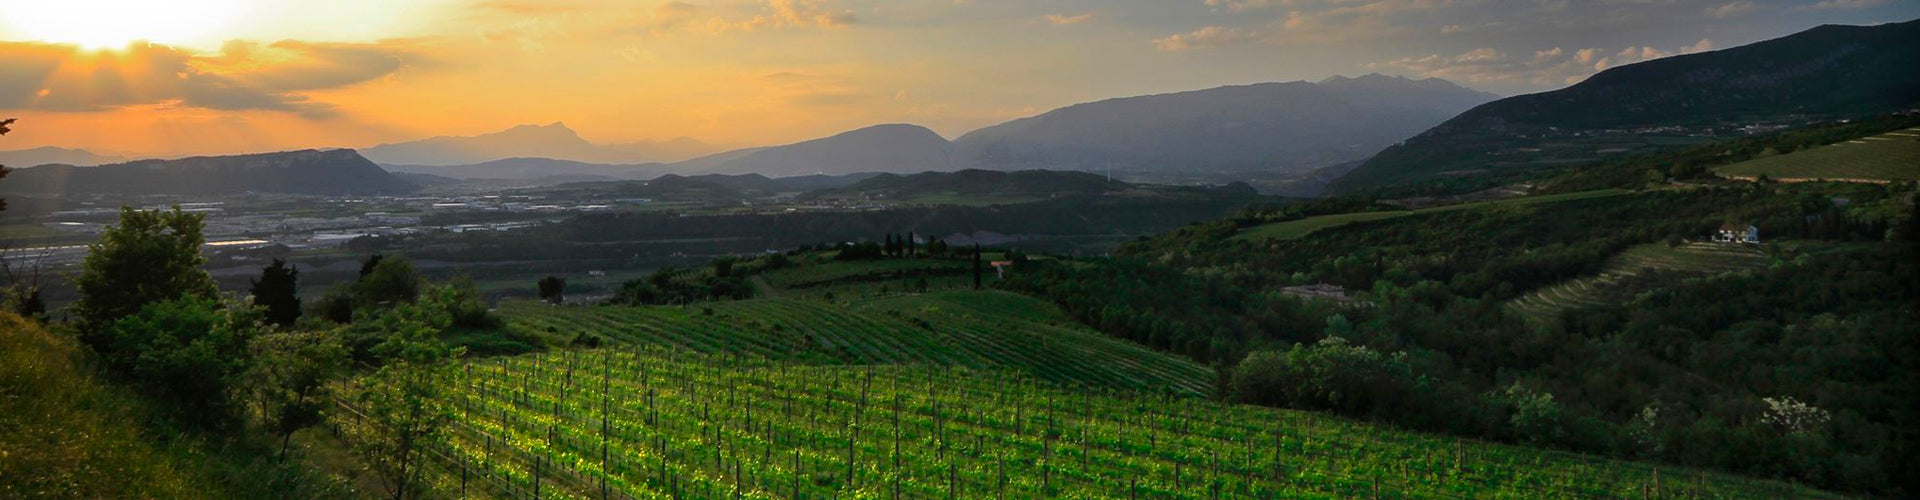 Corte Giara Vineyards in the Veneto, Italy